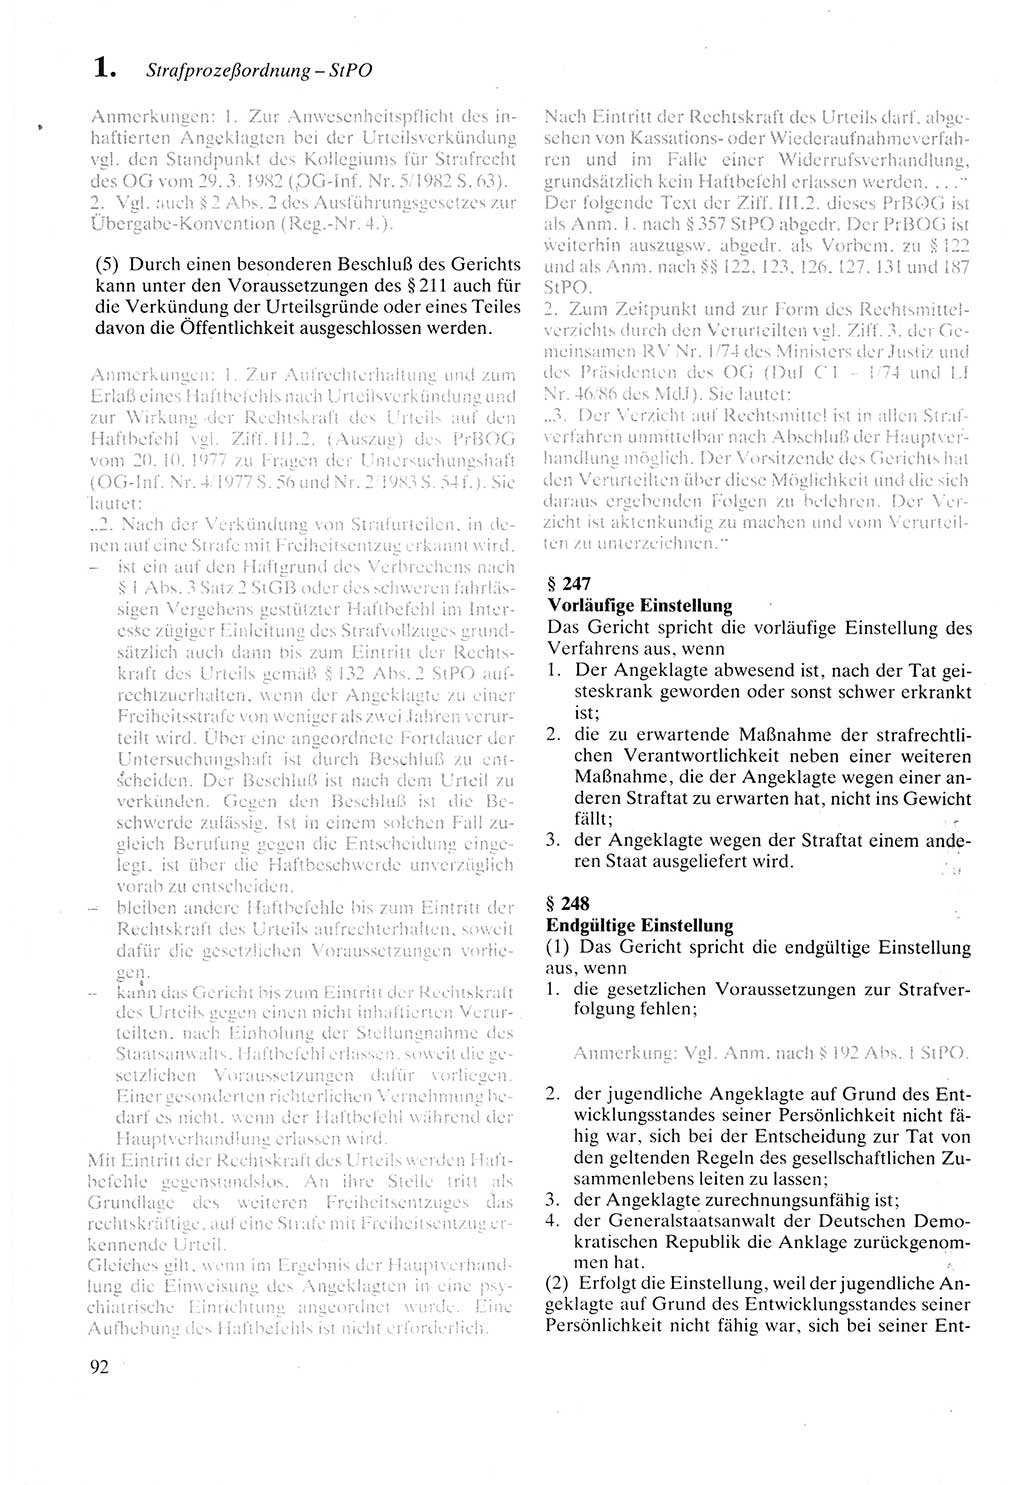 Strafprozeßordnung (StPO) der Deutschen Demokratischen Republik (DDR) sowie angrenzende Gesetze und Bestimmungen 1987, Seite 92 (StPO DDR Ges. Best. 1987, S. 92)